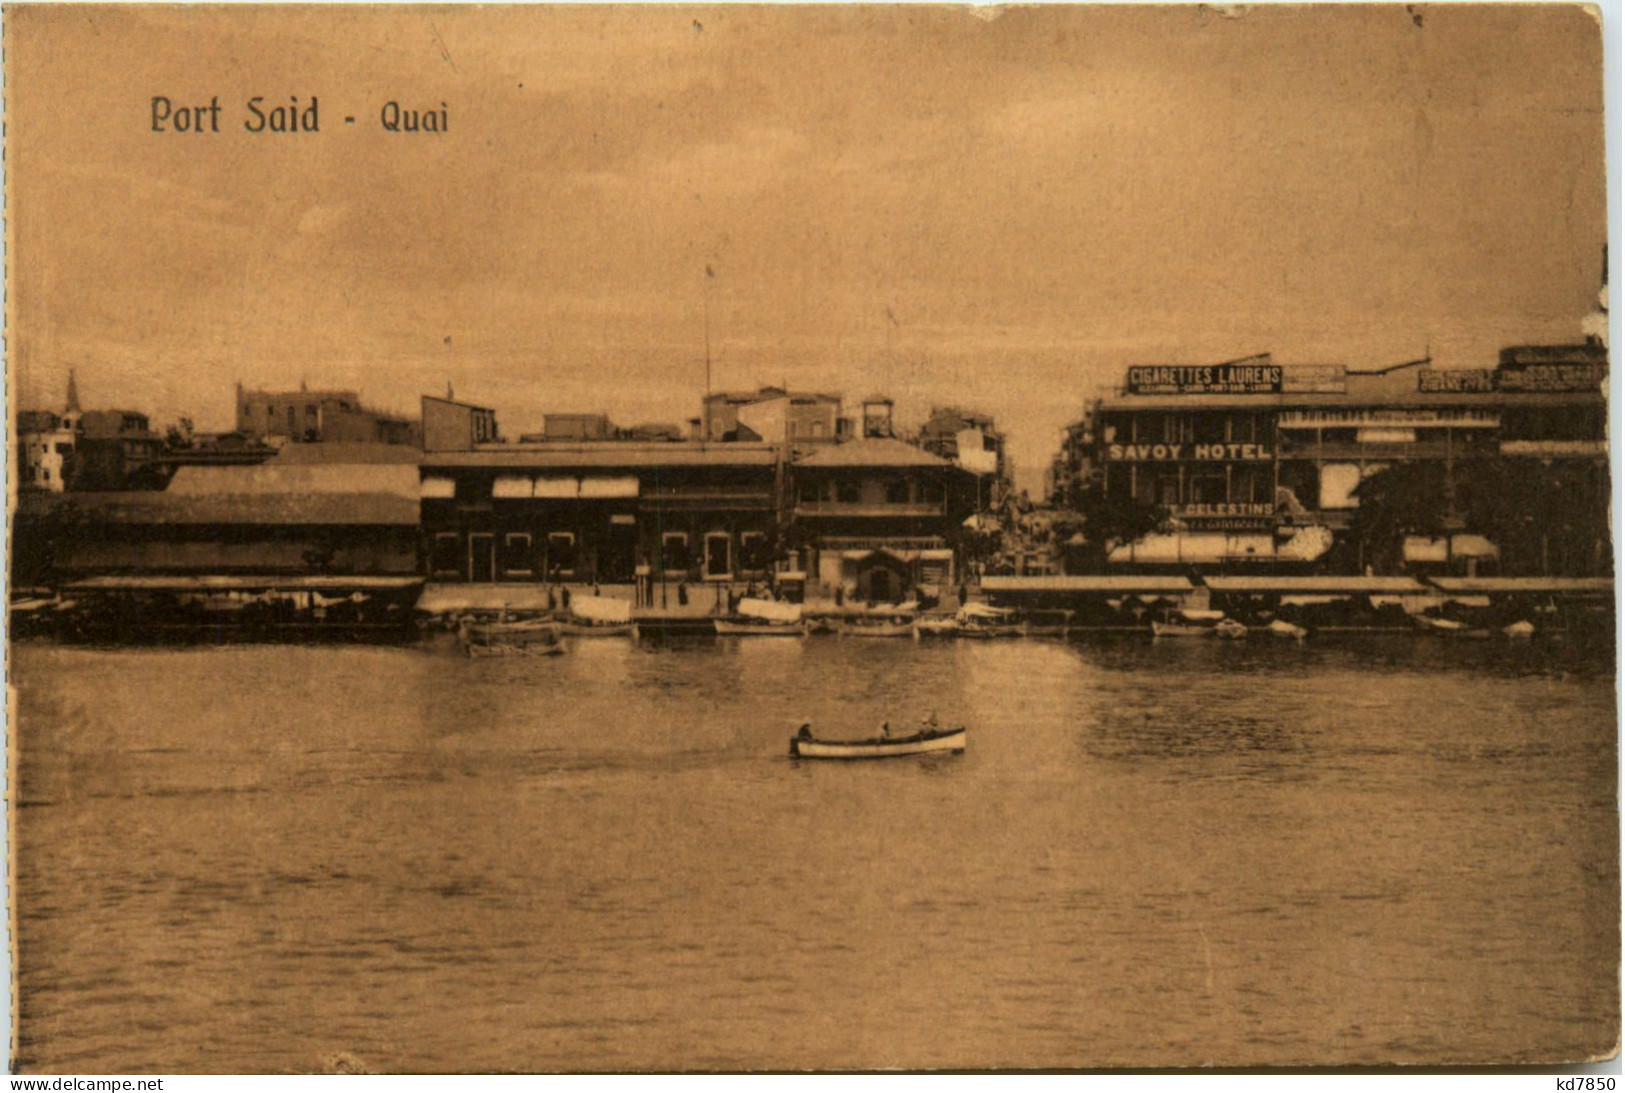 Port Said - Qaui - Port Said